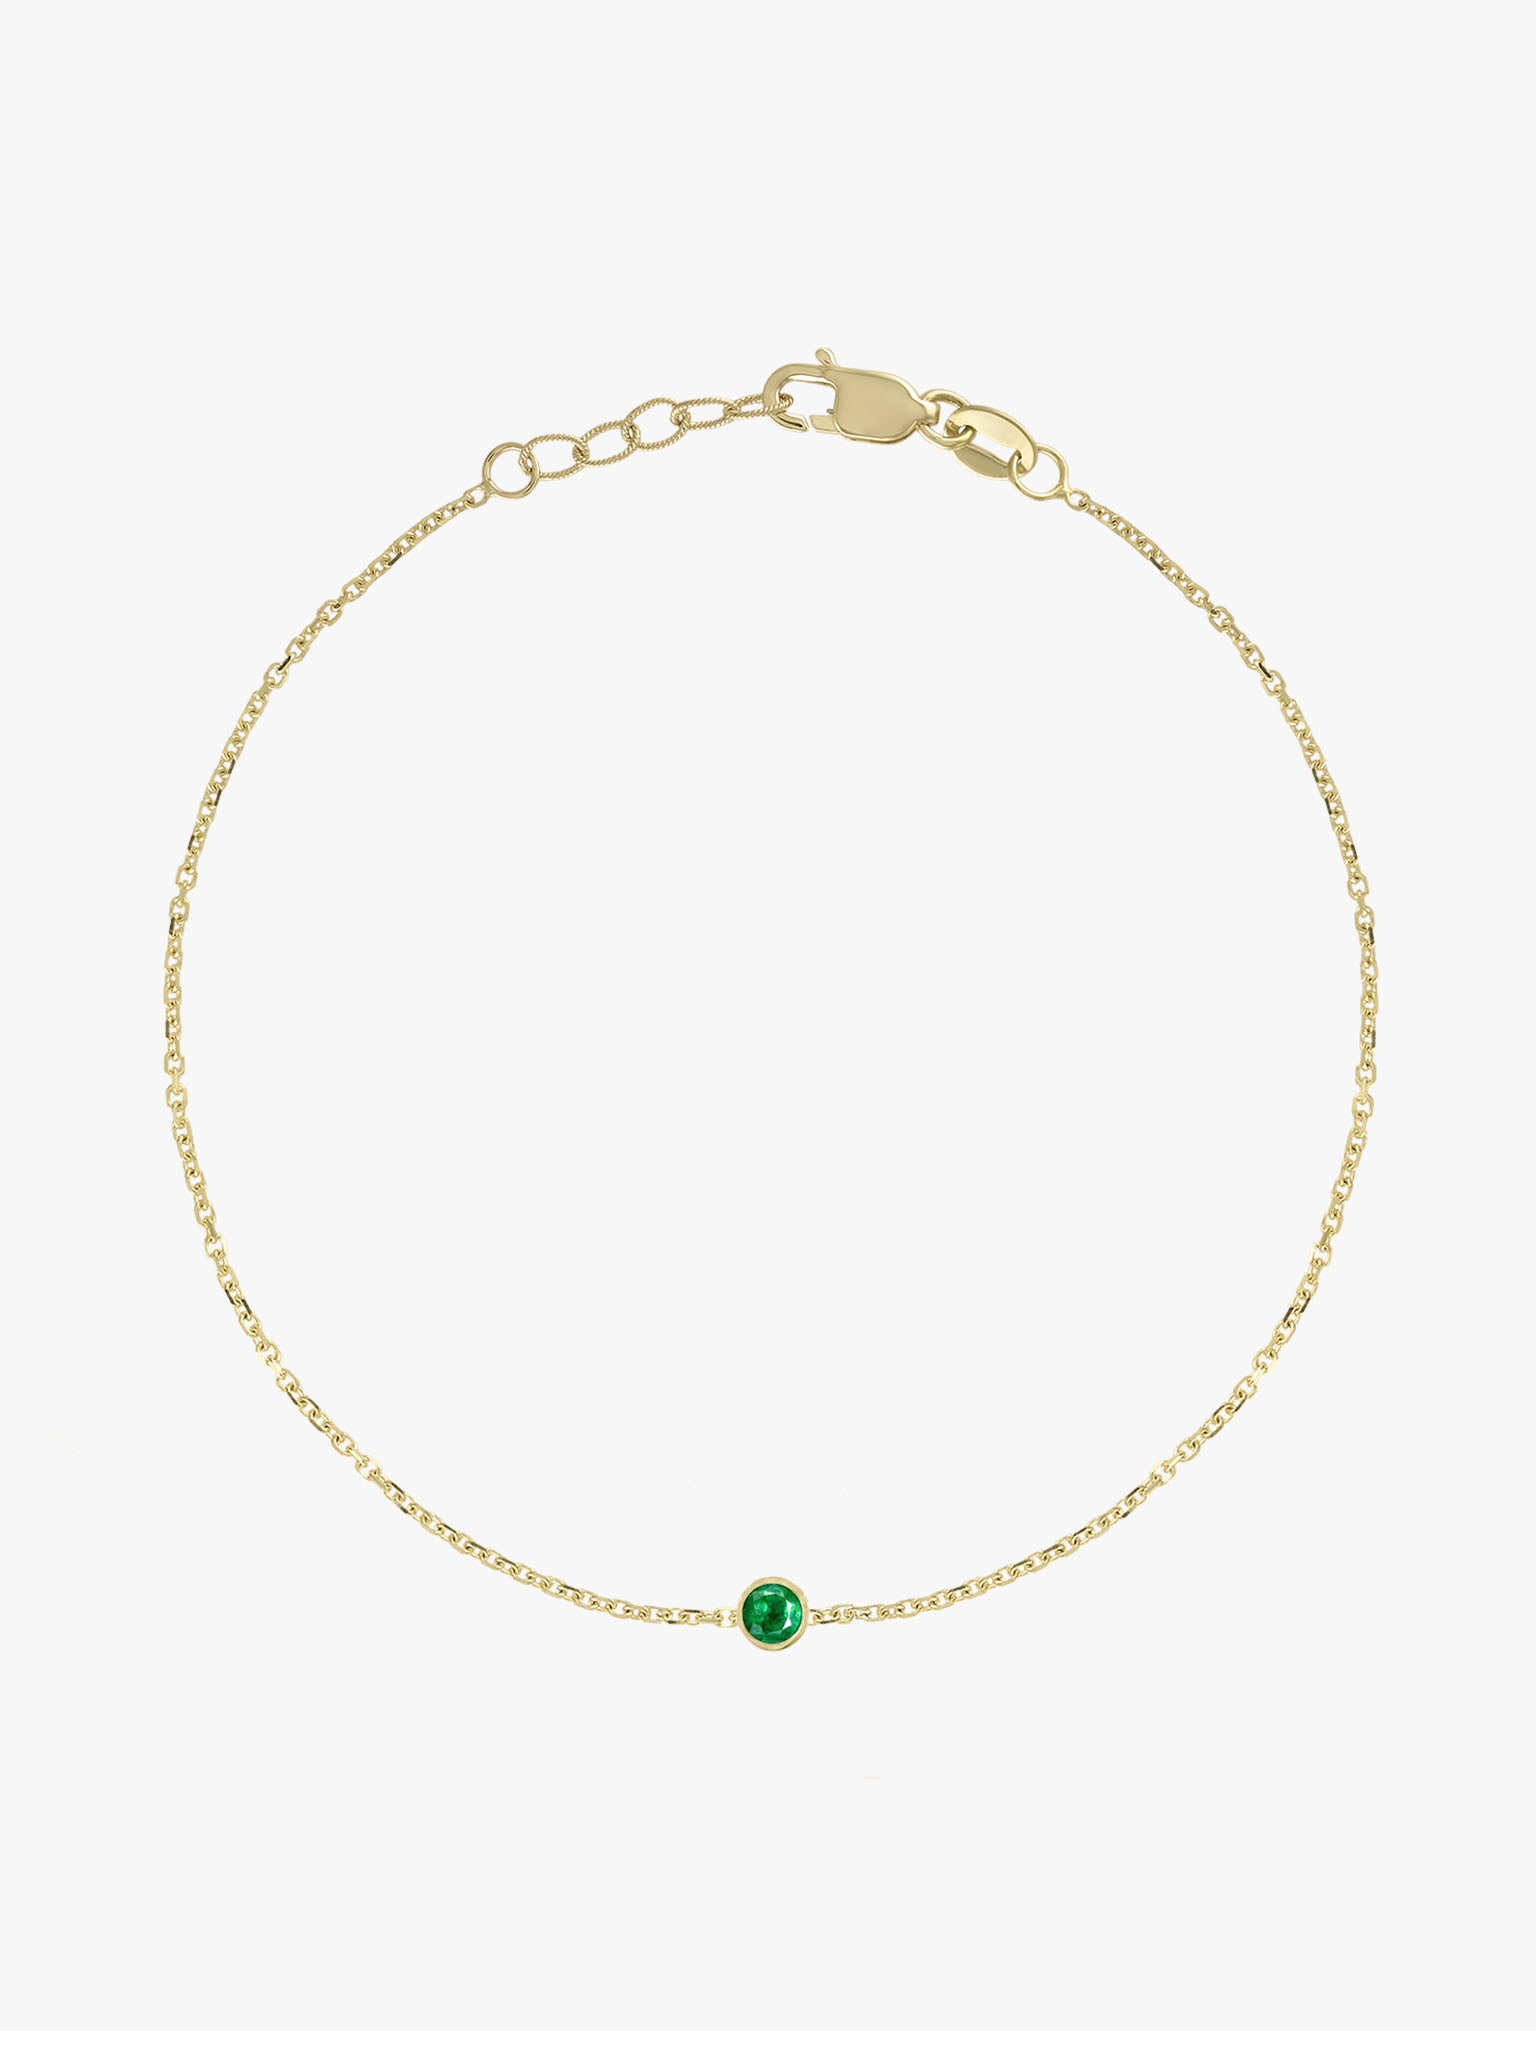 Floating emerald bracelet by Kelly Bello | Finematter